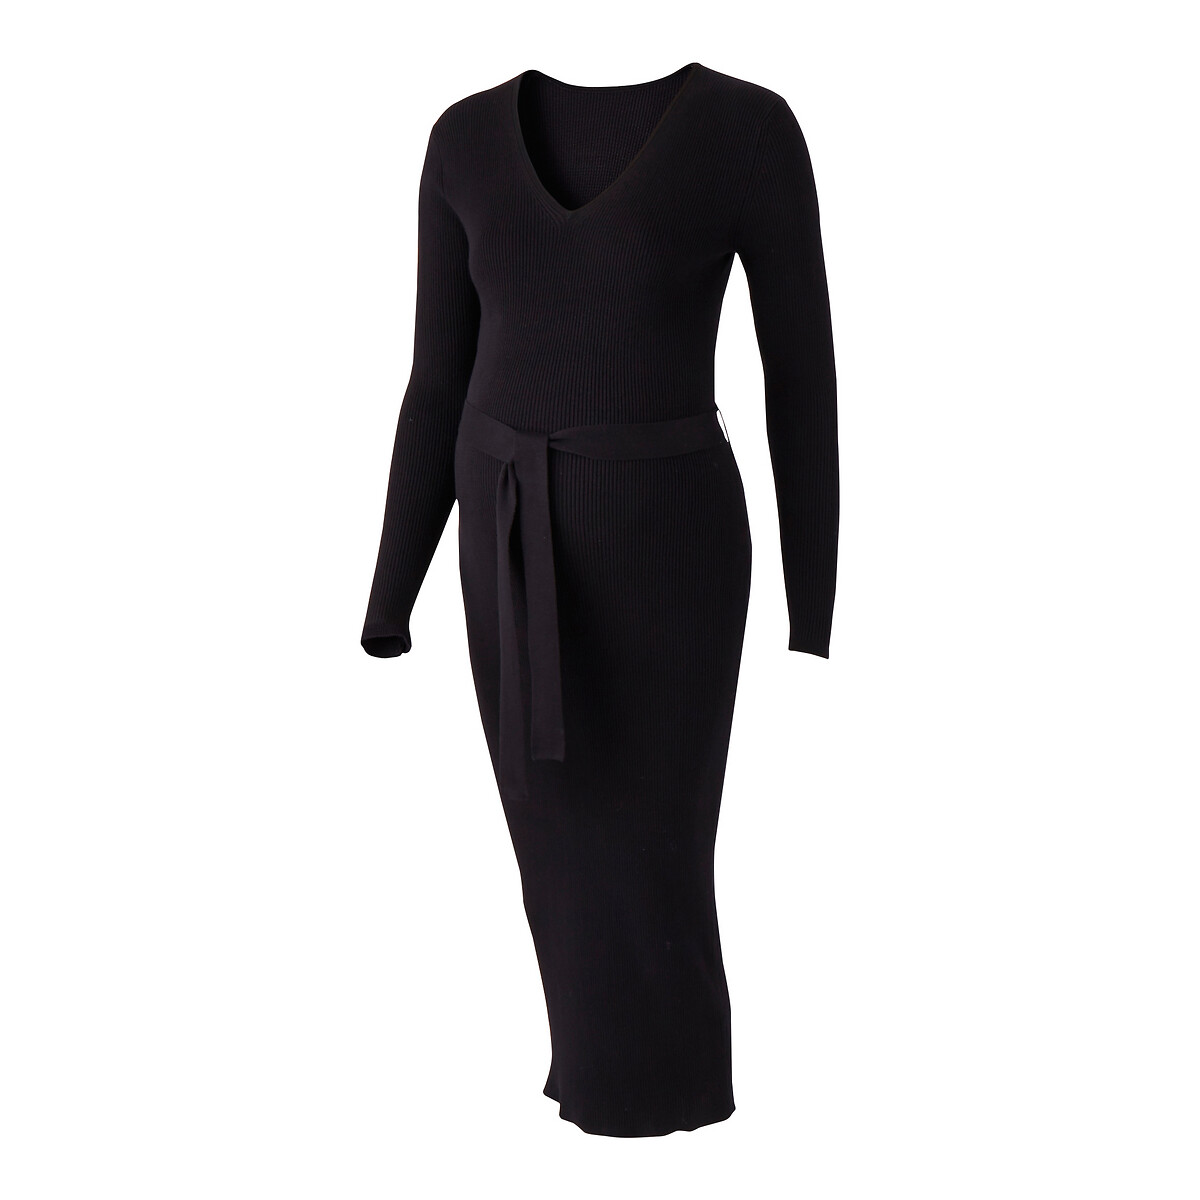 Платье-пуловер La Redoute Длинное для периода беременности длинные рукава S черный, размер S - фото 5